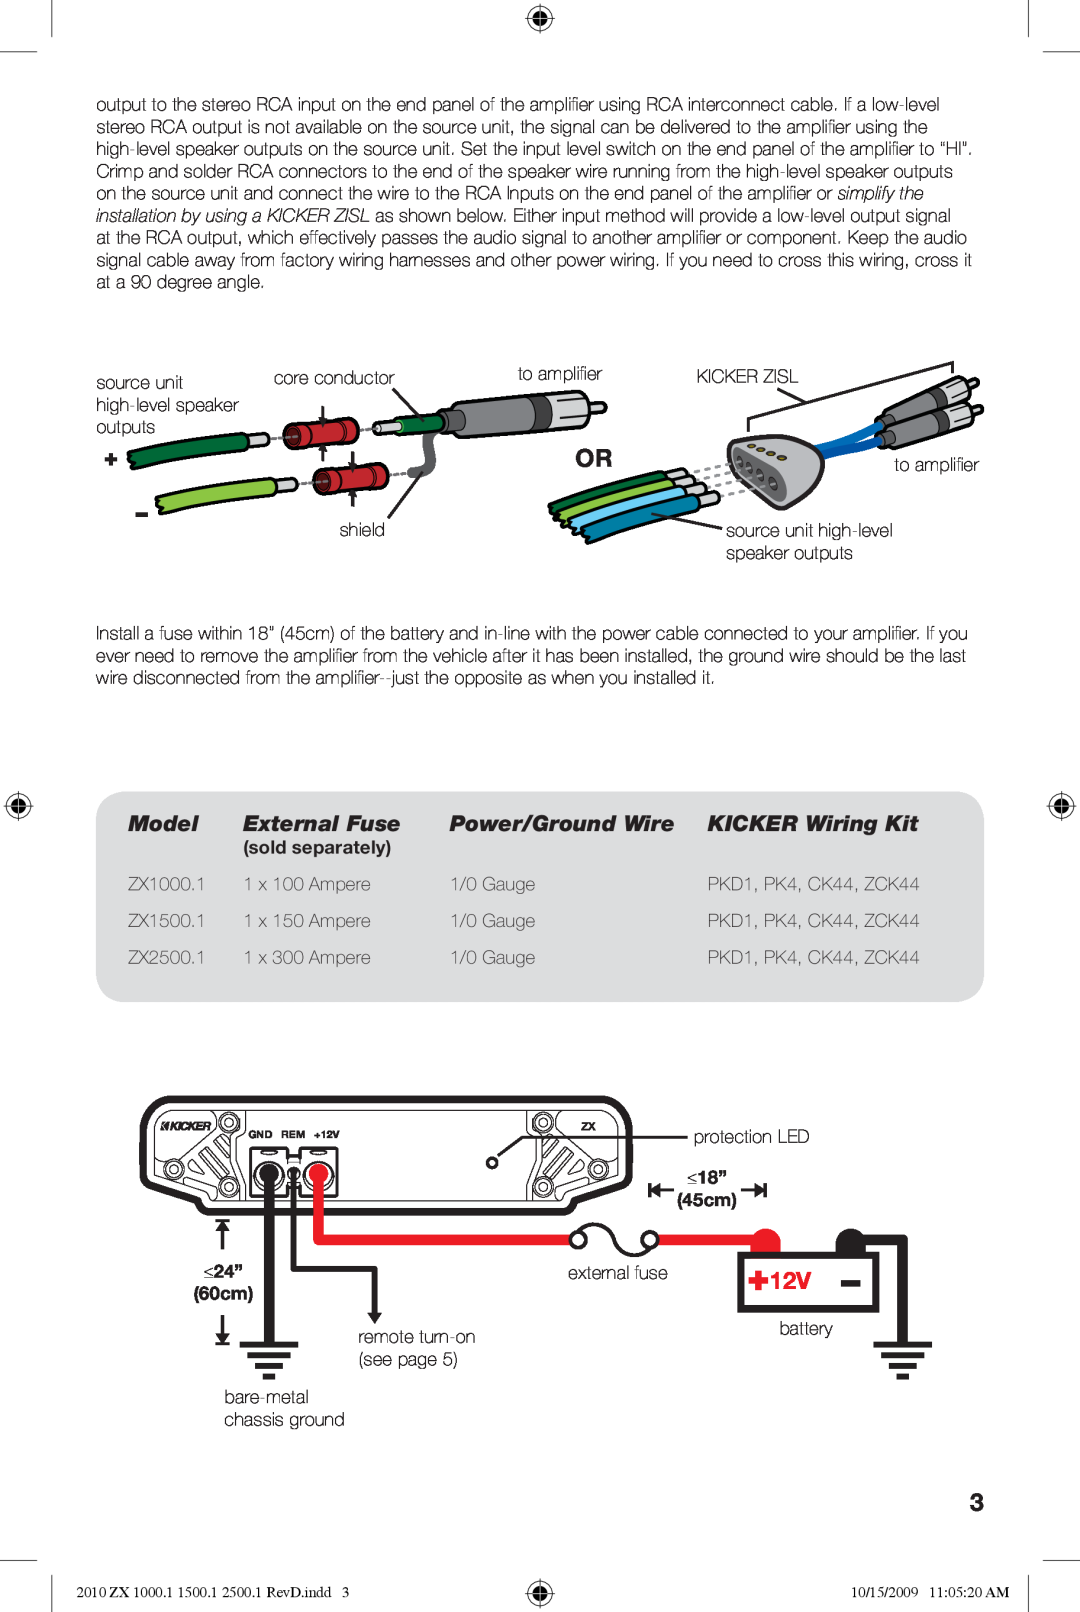 Kicker ZX2500.1, ZX1500.1, ZX1000.1 Model, External Fuse, Power/Ground Wire, KICKER Wiring Kit, sold separately, ≤24”, ≤18” 